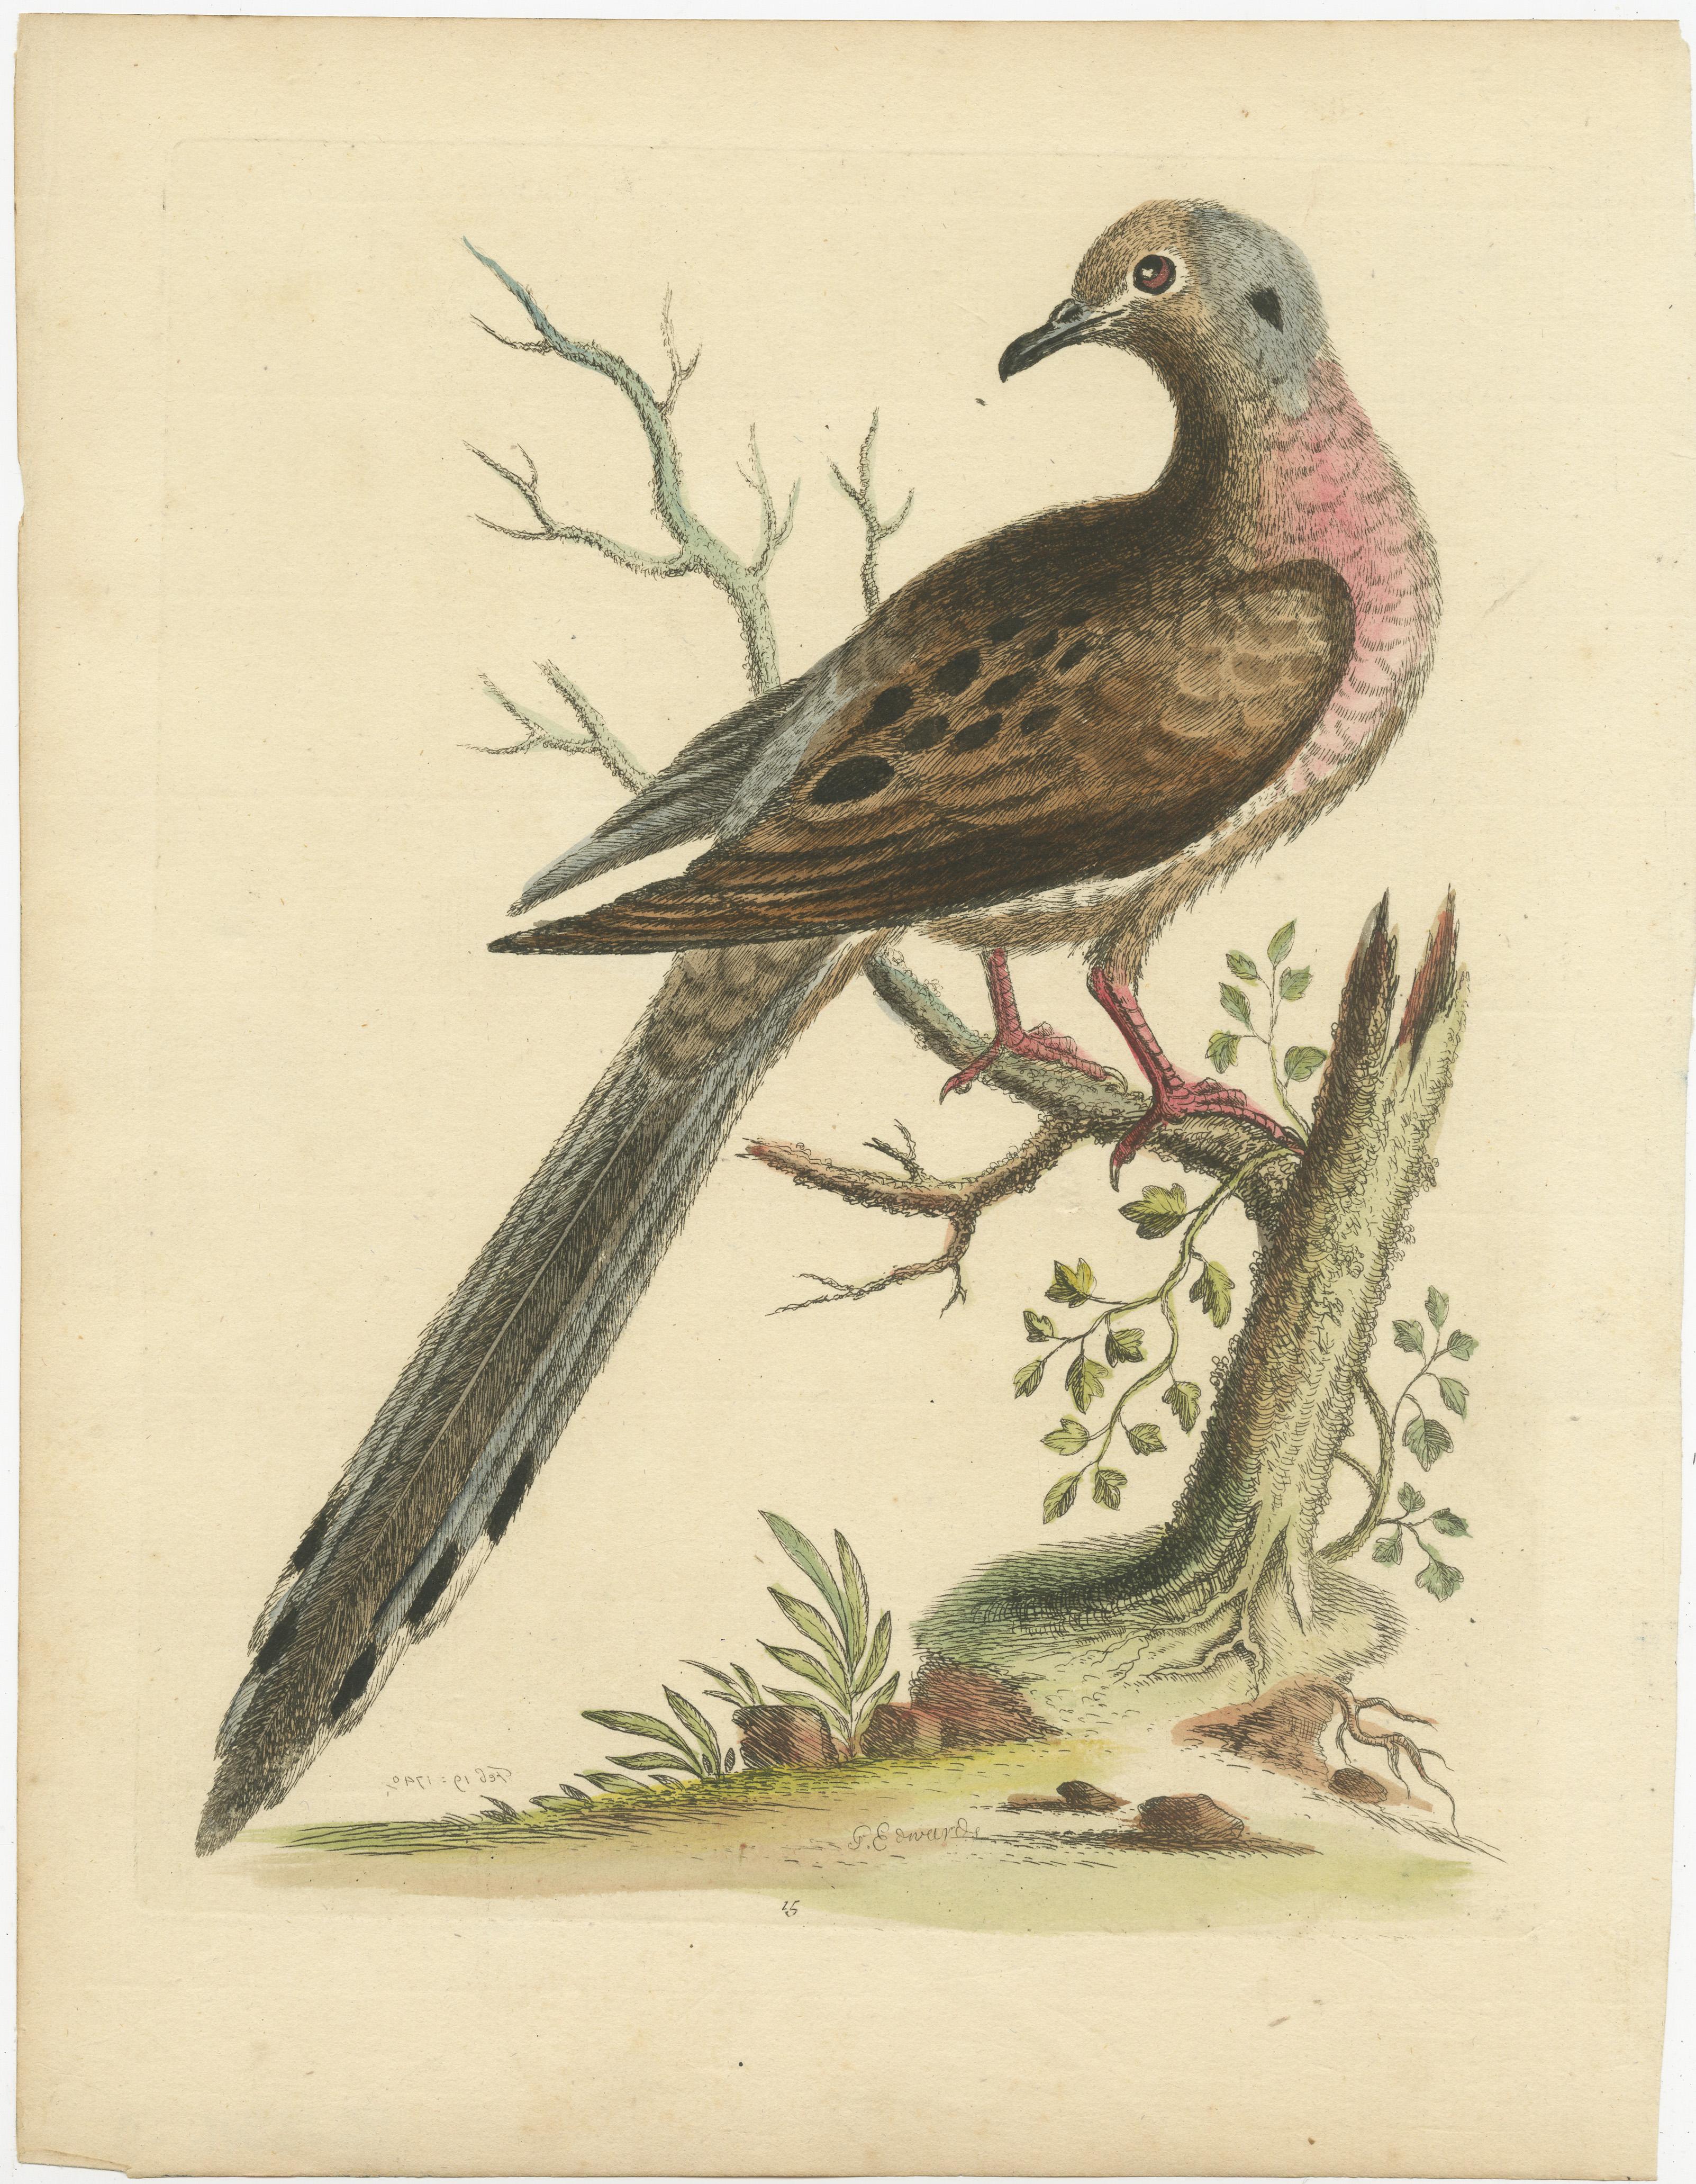 Gravure ancienne originale d'un pigeon voyageur ou d'un pigeon sauvage (Ectopistes migratorius). Cette estampe est tirée de l'ouvrage 